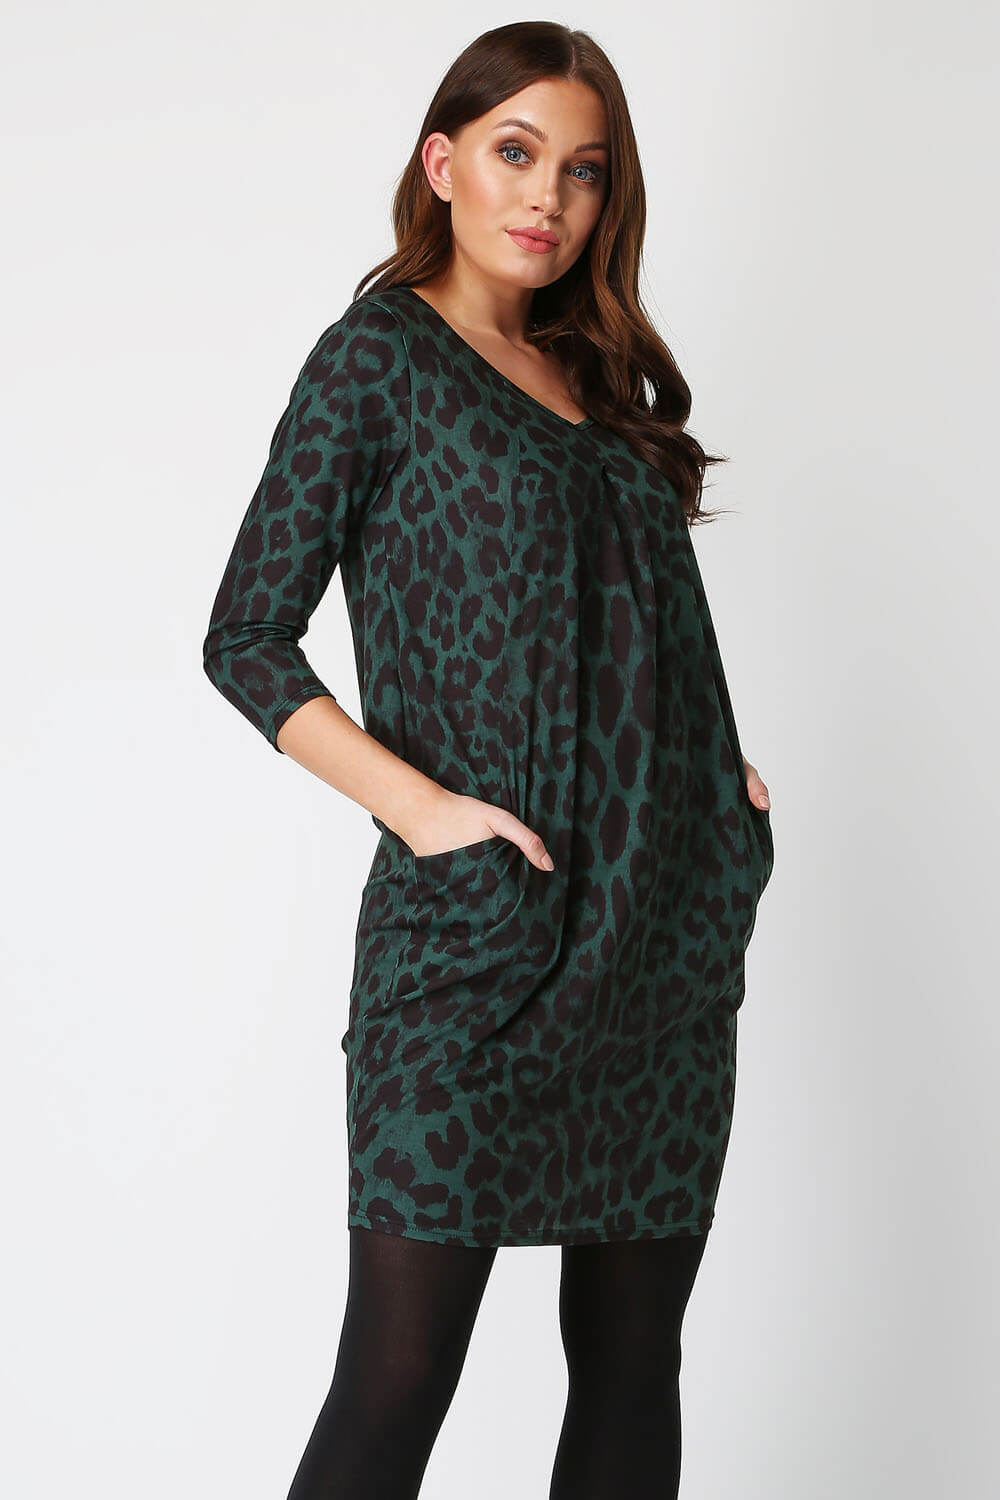 leopard print dress green